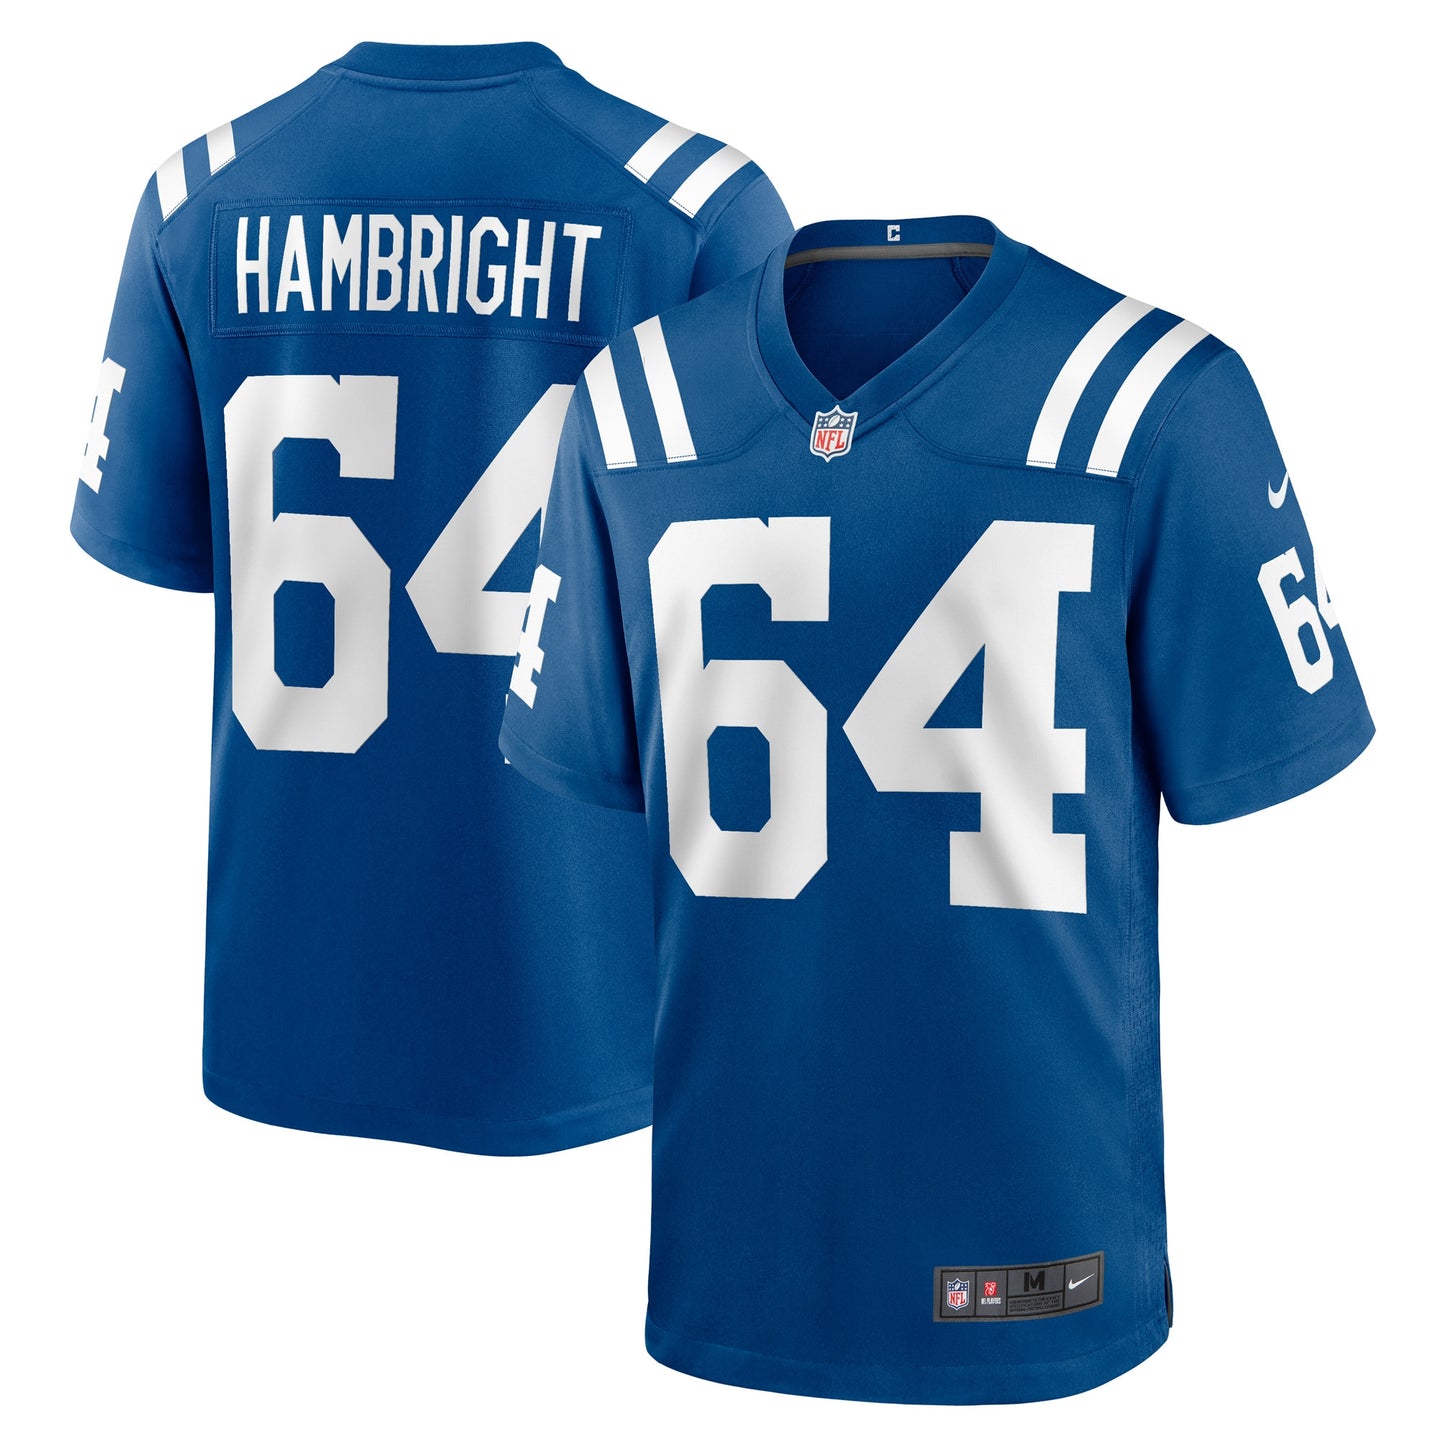 Arlington Hambright Indianapolis Colts Nike Game Player Jersey - Royal